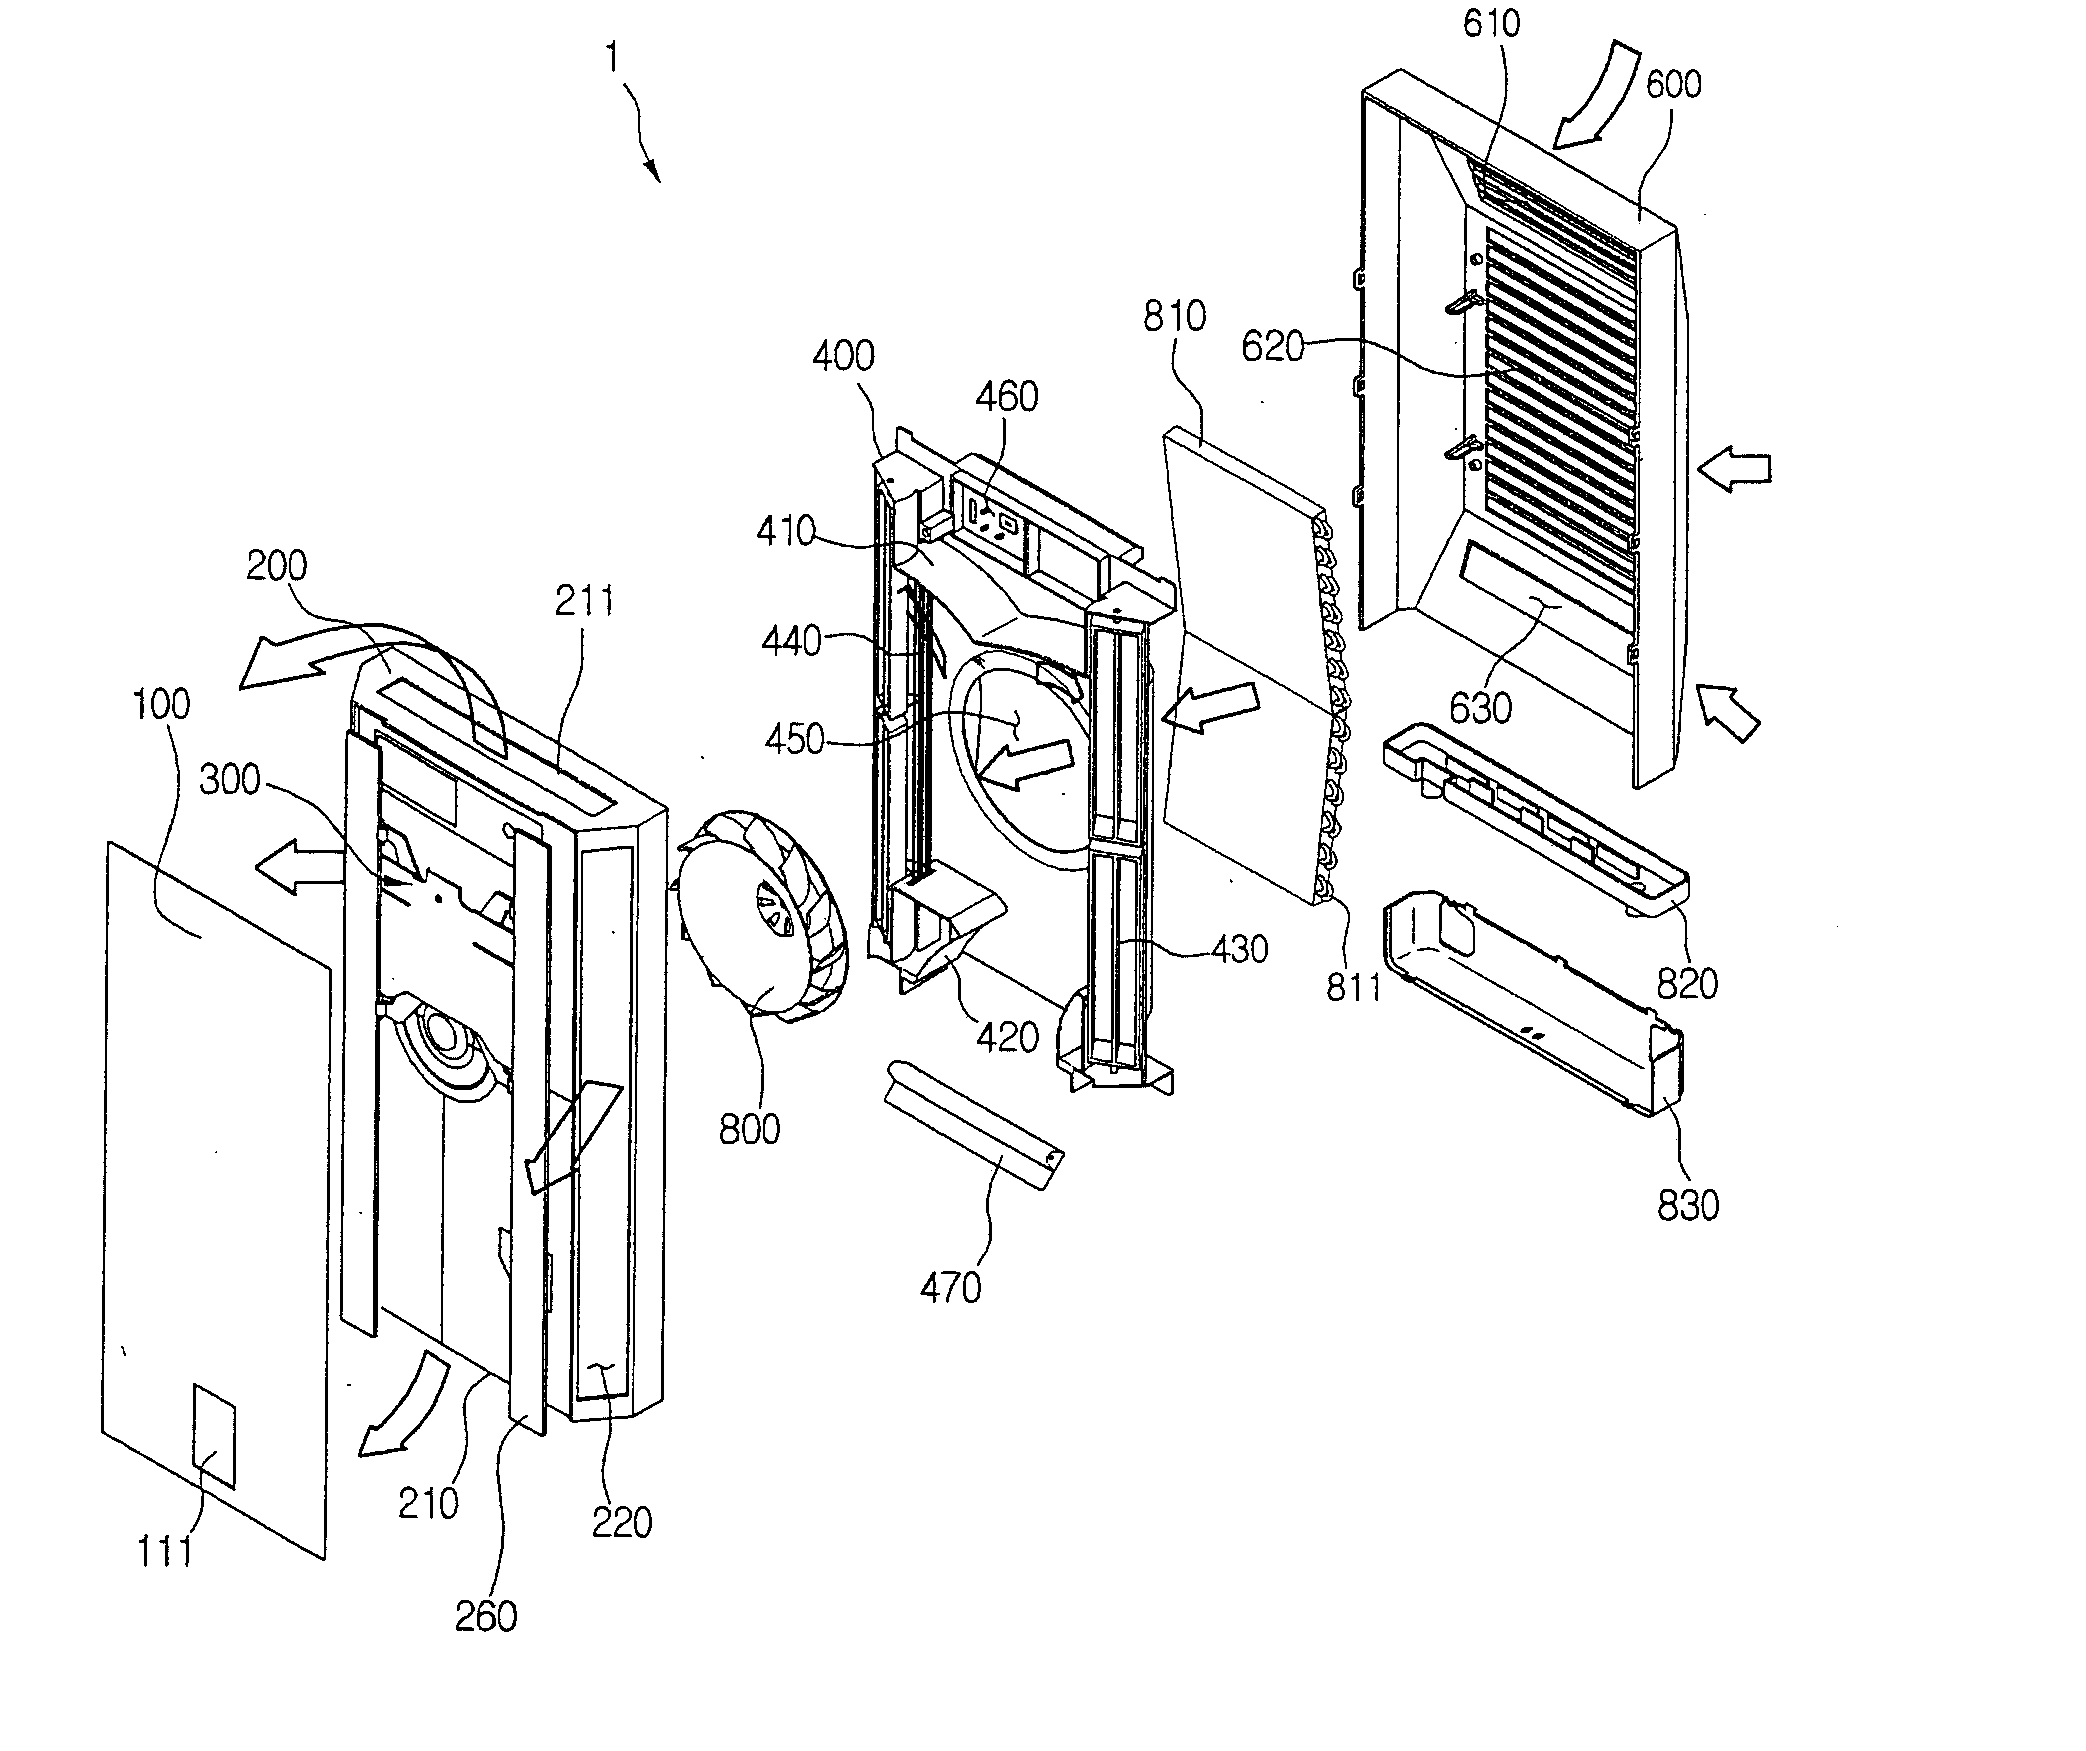 Indoor unit in air conditioner